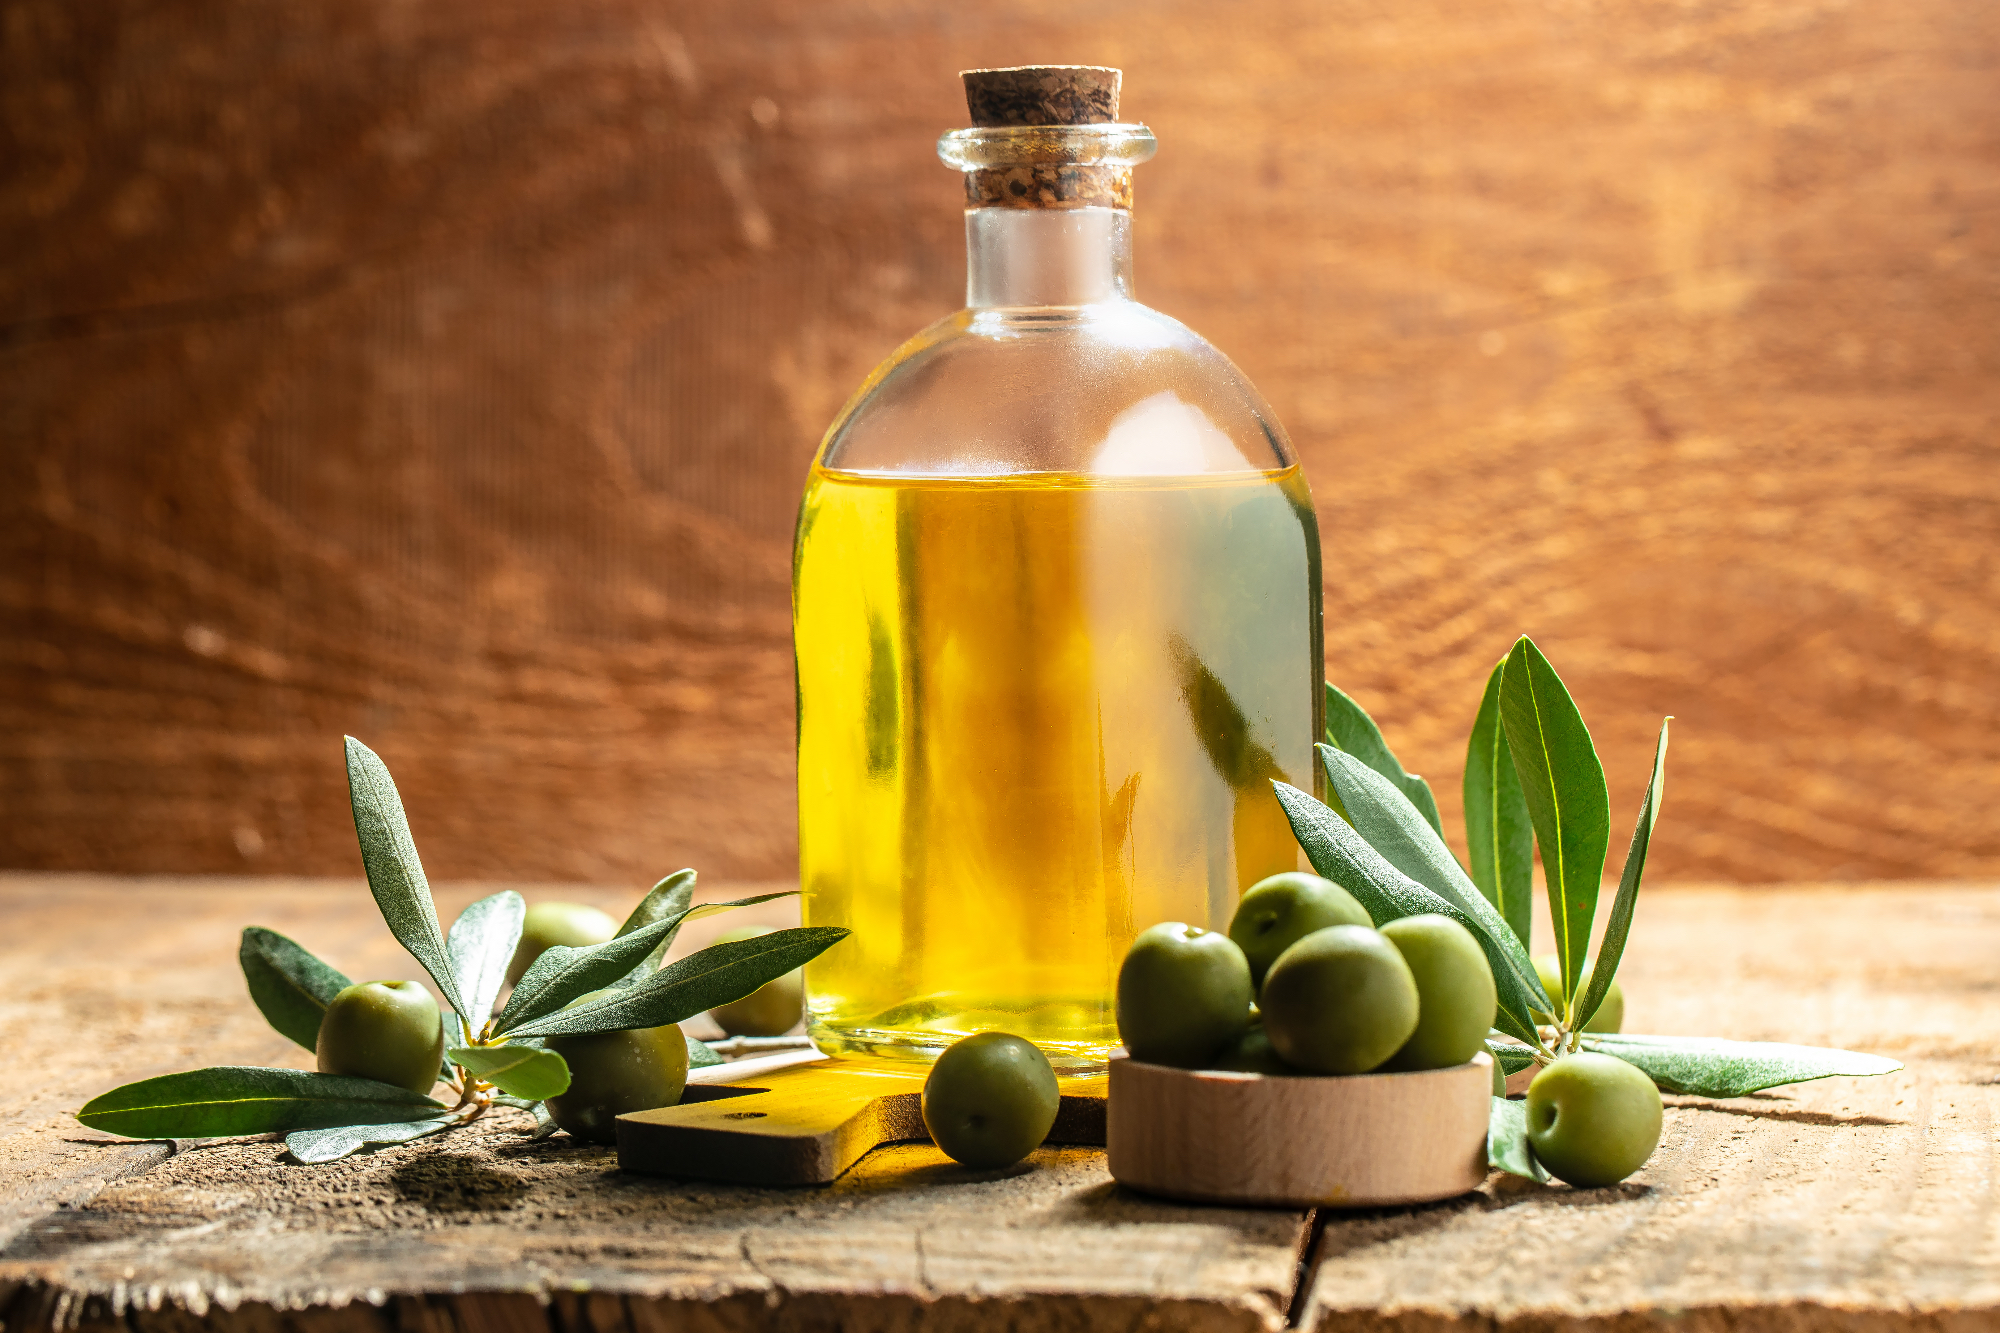 Olivno olje je tako okusno, da ga lahko nekomu podarimo za rojstni dan